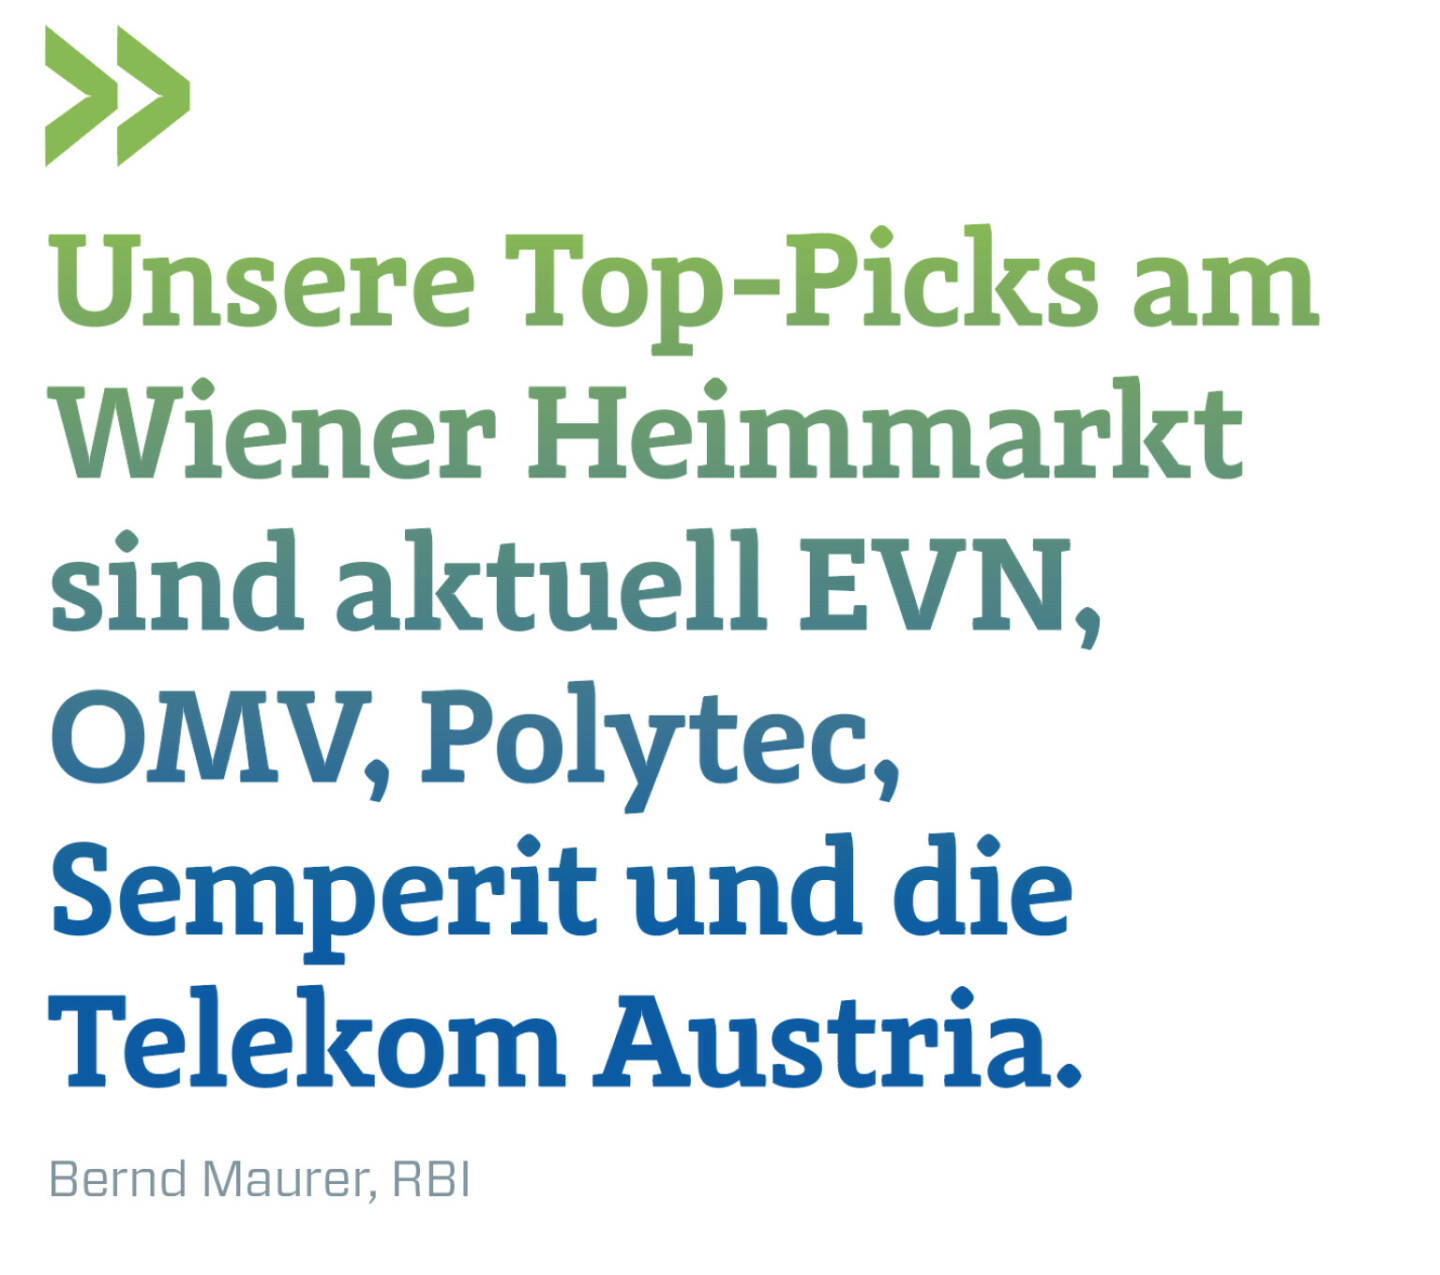 Unsere Top-Picks am Wiener Heimmarkt sind aktuell EVN, OMV, Polytec, Semperit und die Telekom Austria. 
Bernd Maurer, RBI